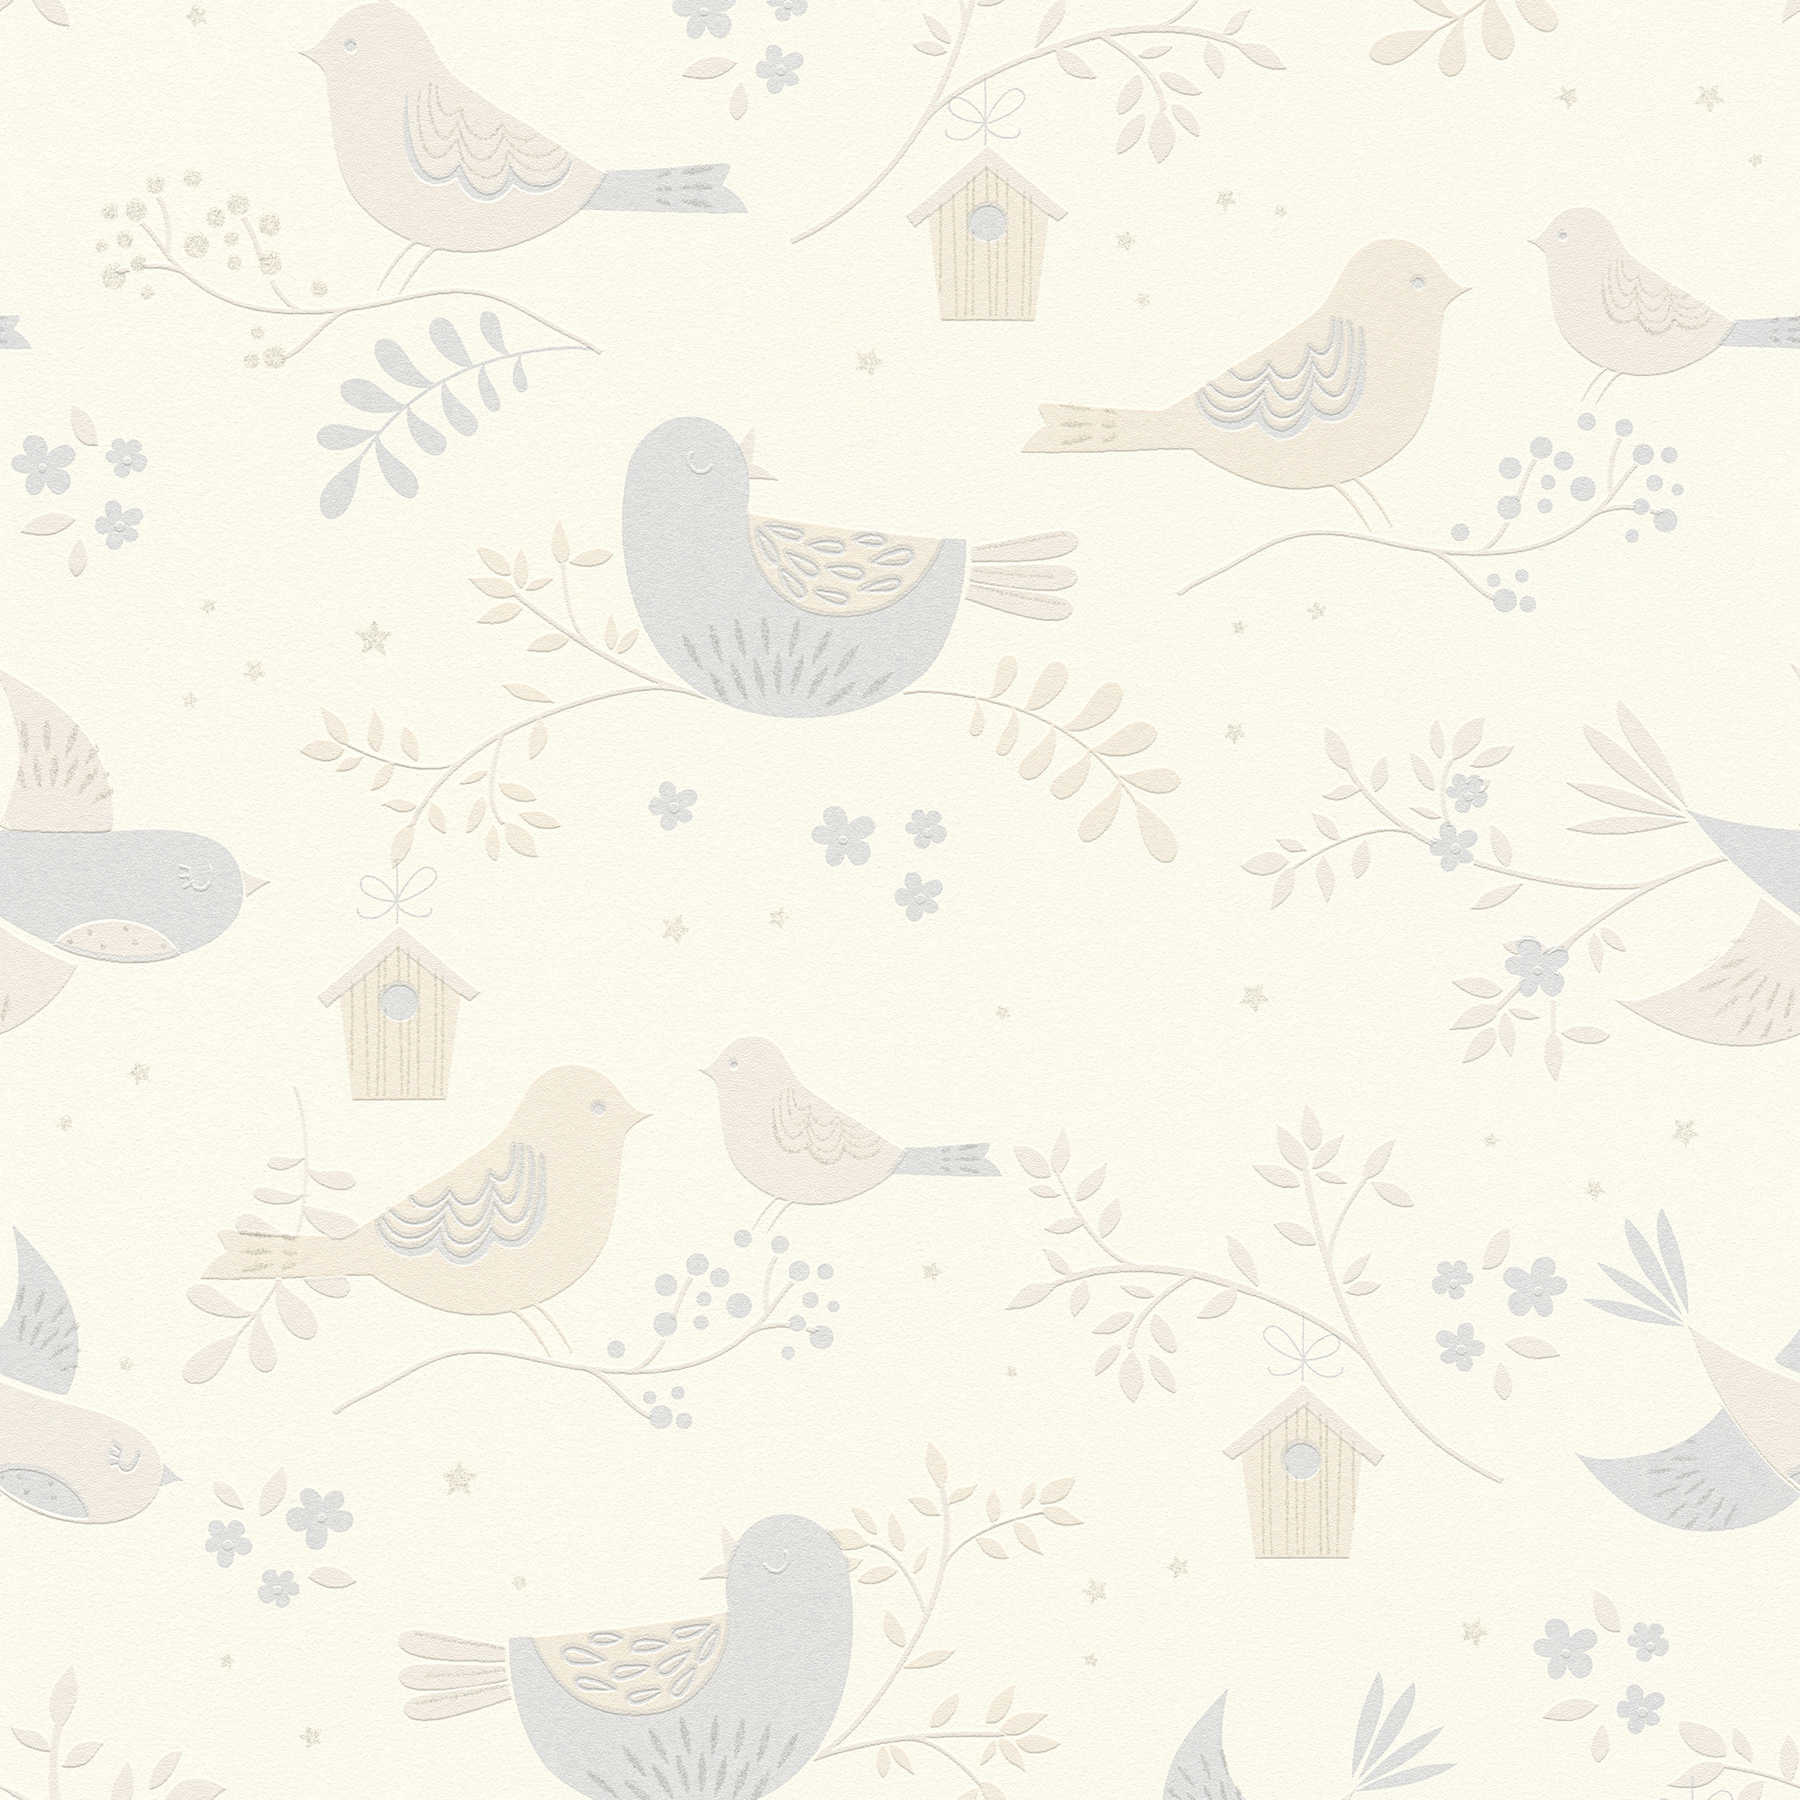         Tapete Vogel & Blumenmuster für Babyzimmer– Beige, Grau
    